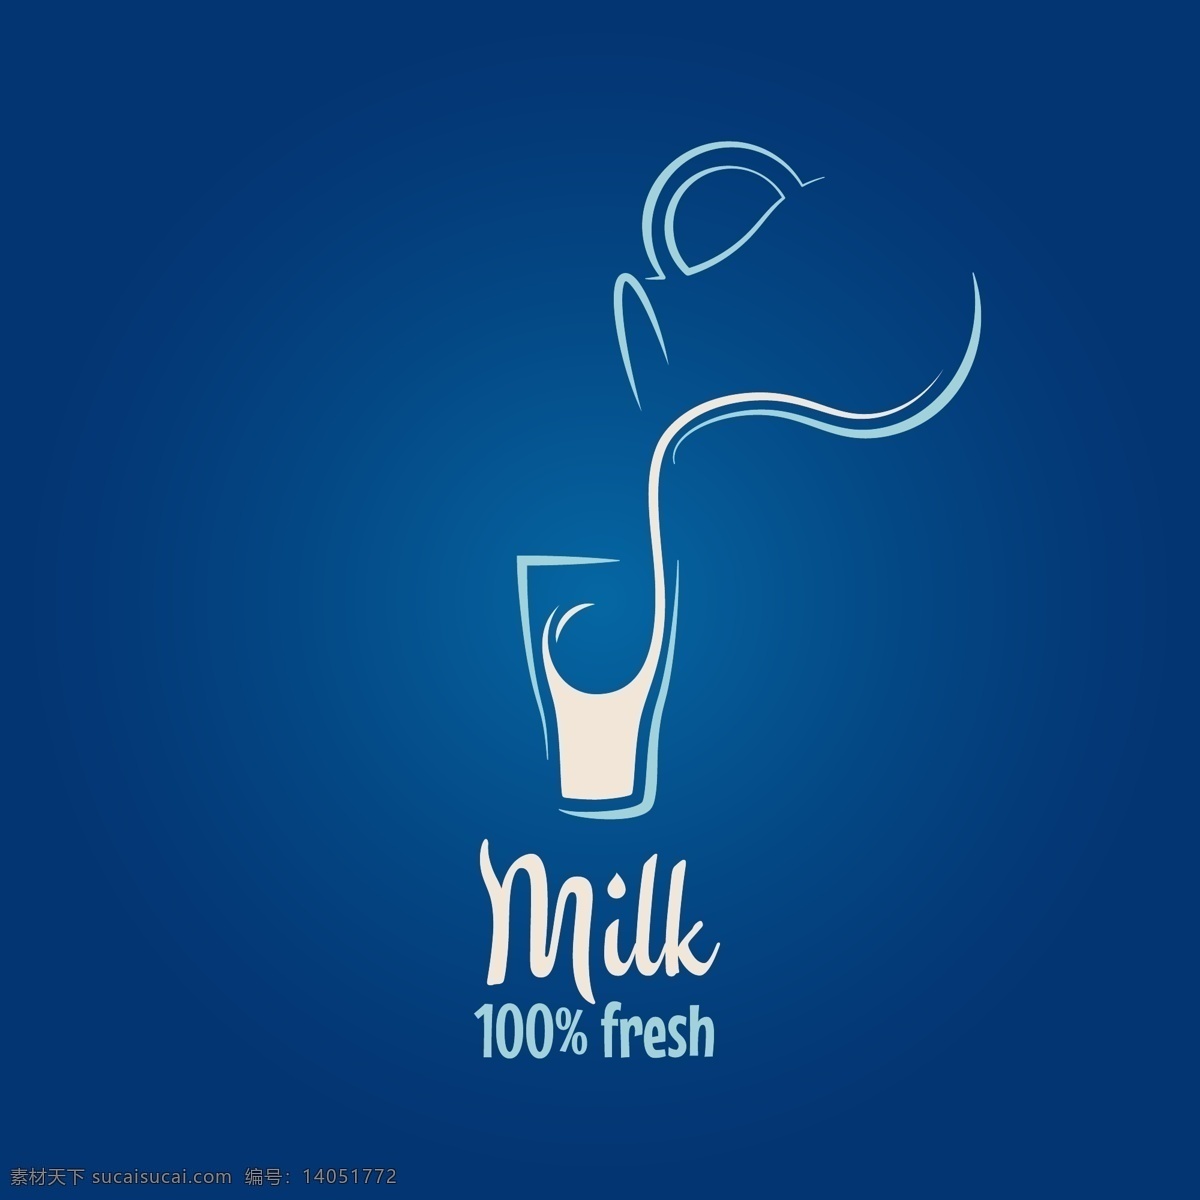 牛奶 牛奶瓶 奶牛 milk 杯子 矢量图 牛奶包装 包装设计 矢量 餐饮美食素材 餐饮美食 生活百科 底纹边框